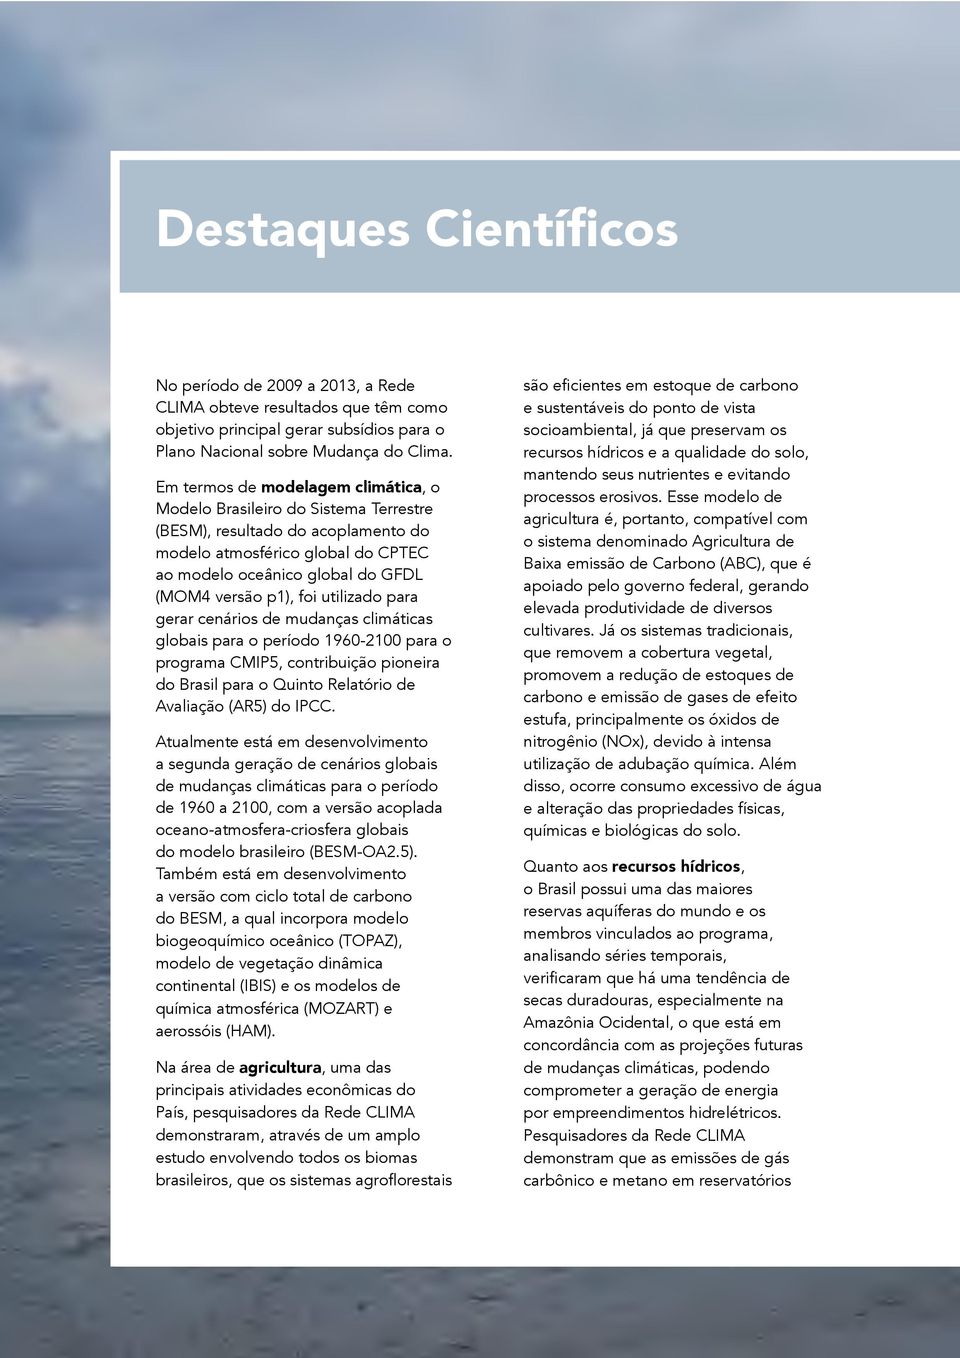 foi utilizado para gerar cenários de mudanças climáticas globais para o período 1960-2100 para o programa CMIP5, contribuição pioneira do Brasil para o Quinto Relatório de Avaliação (AR5) do IPCC.